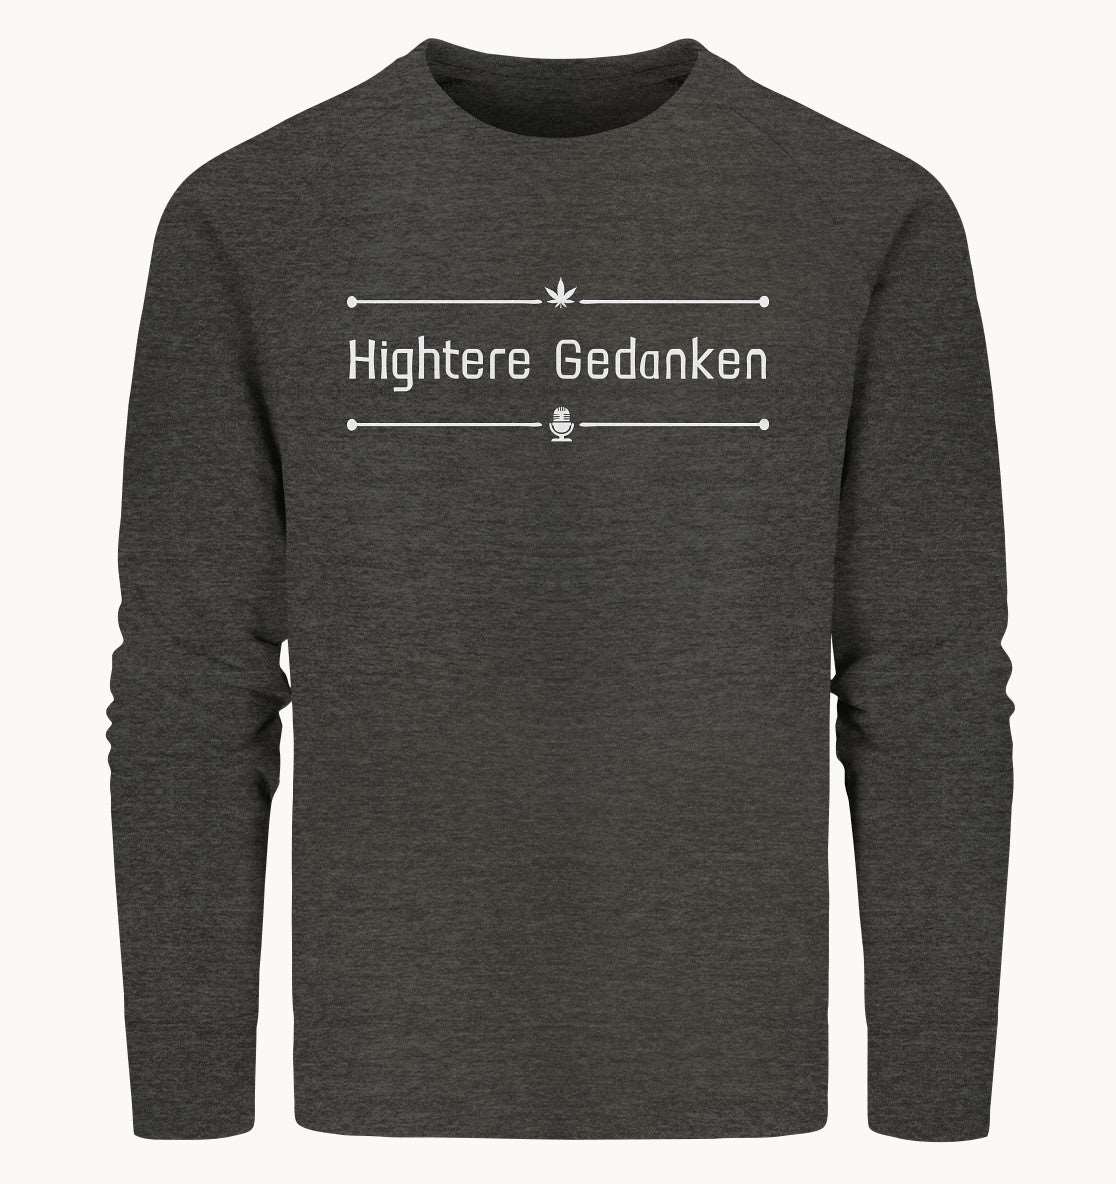 Hightere Gedanken - Organic Sweatshirt